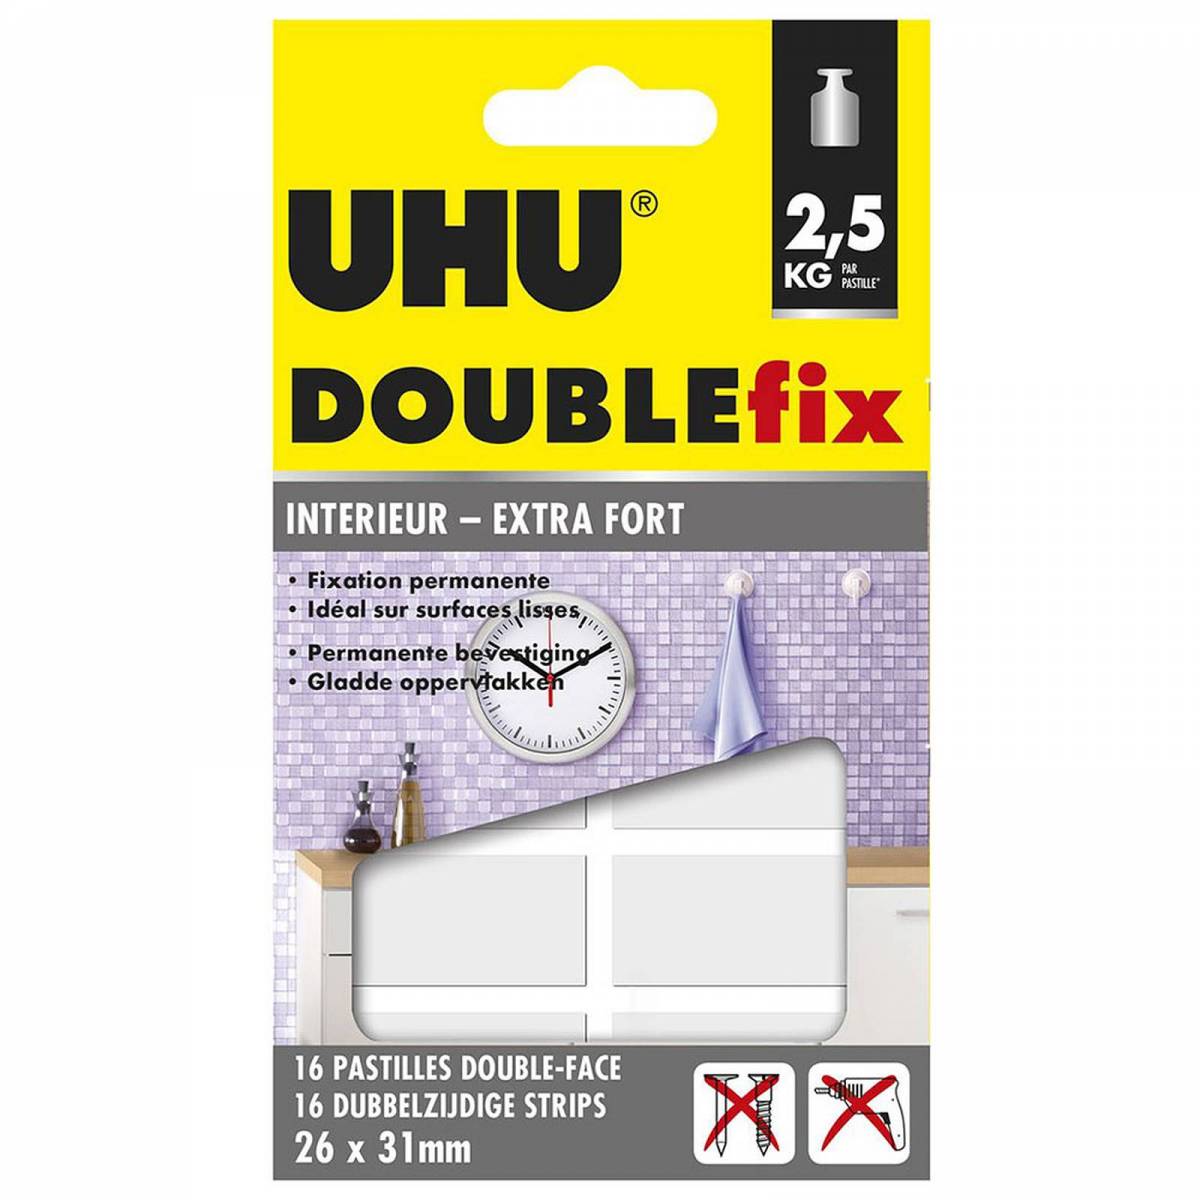 UHU Doulbefix - 16 Pastilles Double-Face 26 x 31 mm